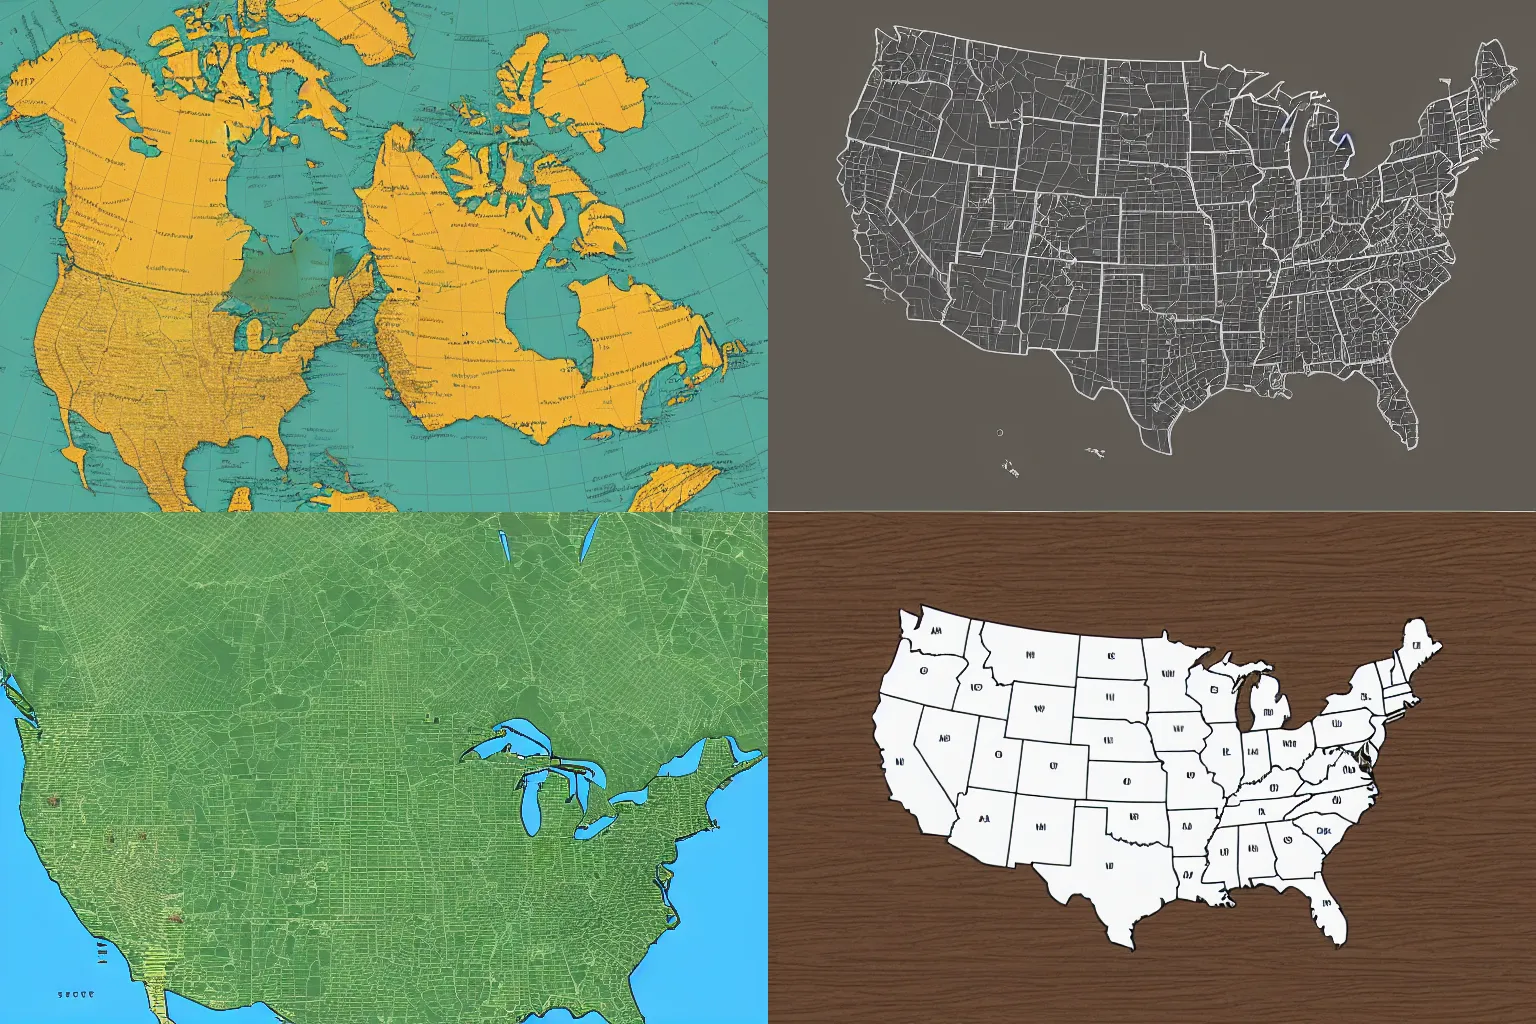 Prompt: minimalist svg map of north america turned sideways